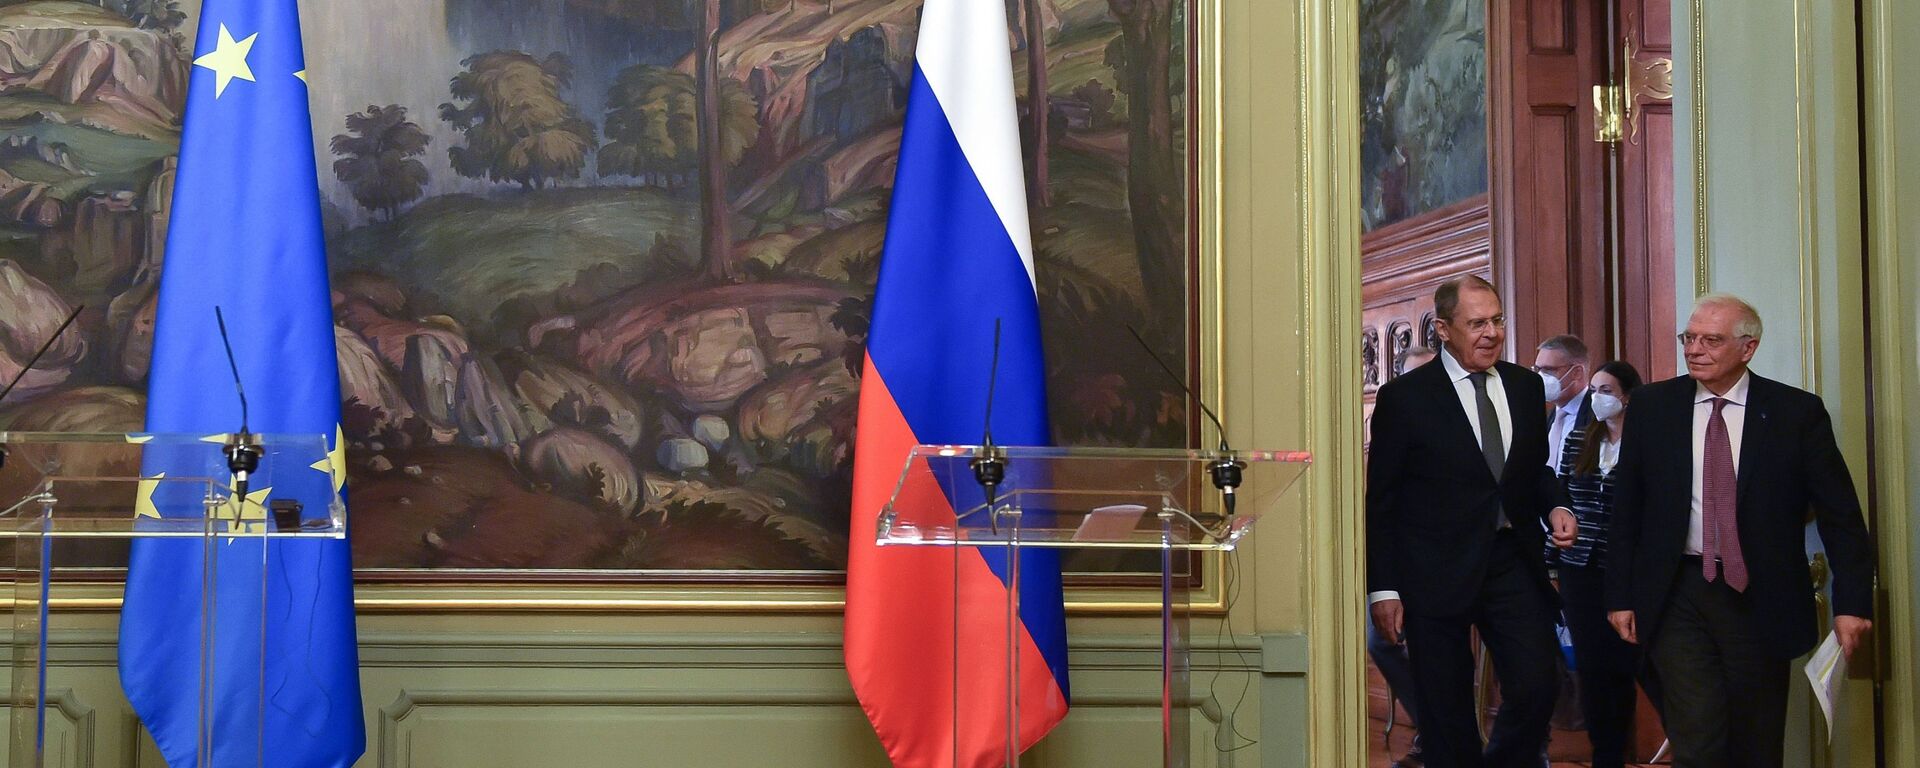 El jefe de la diplomacia europea, Josep Borrell, junto al canciller de Rusia, Serguéi Lavrov - Sputnik Mundo, 1920, 17.01.2022